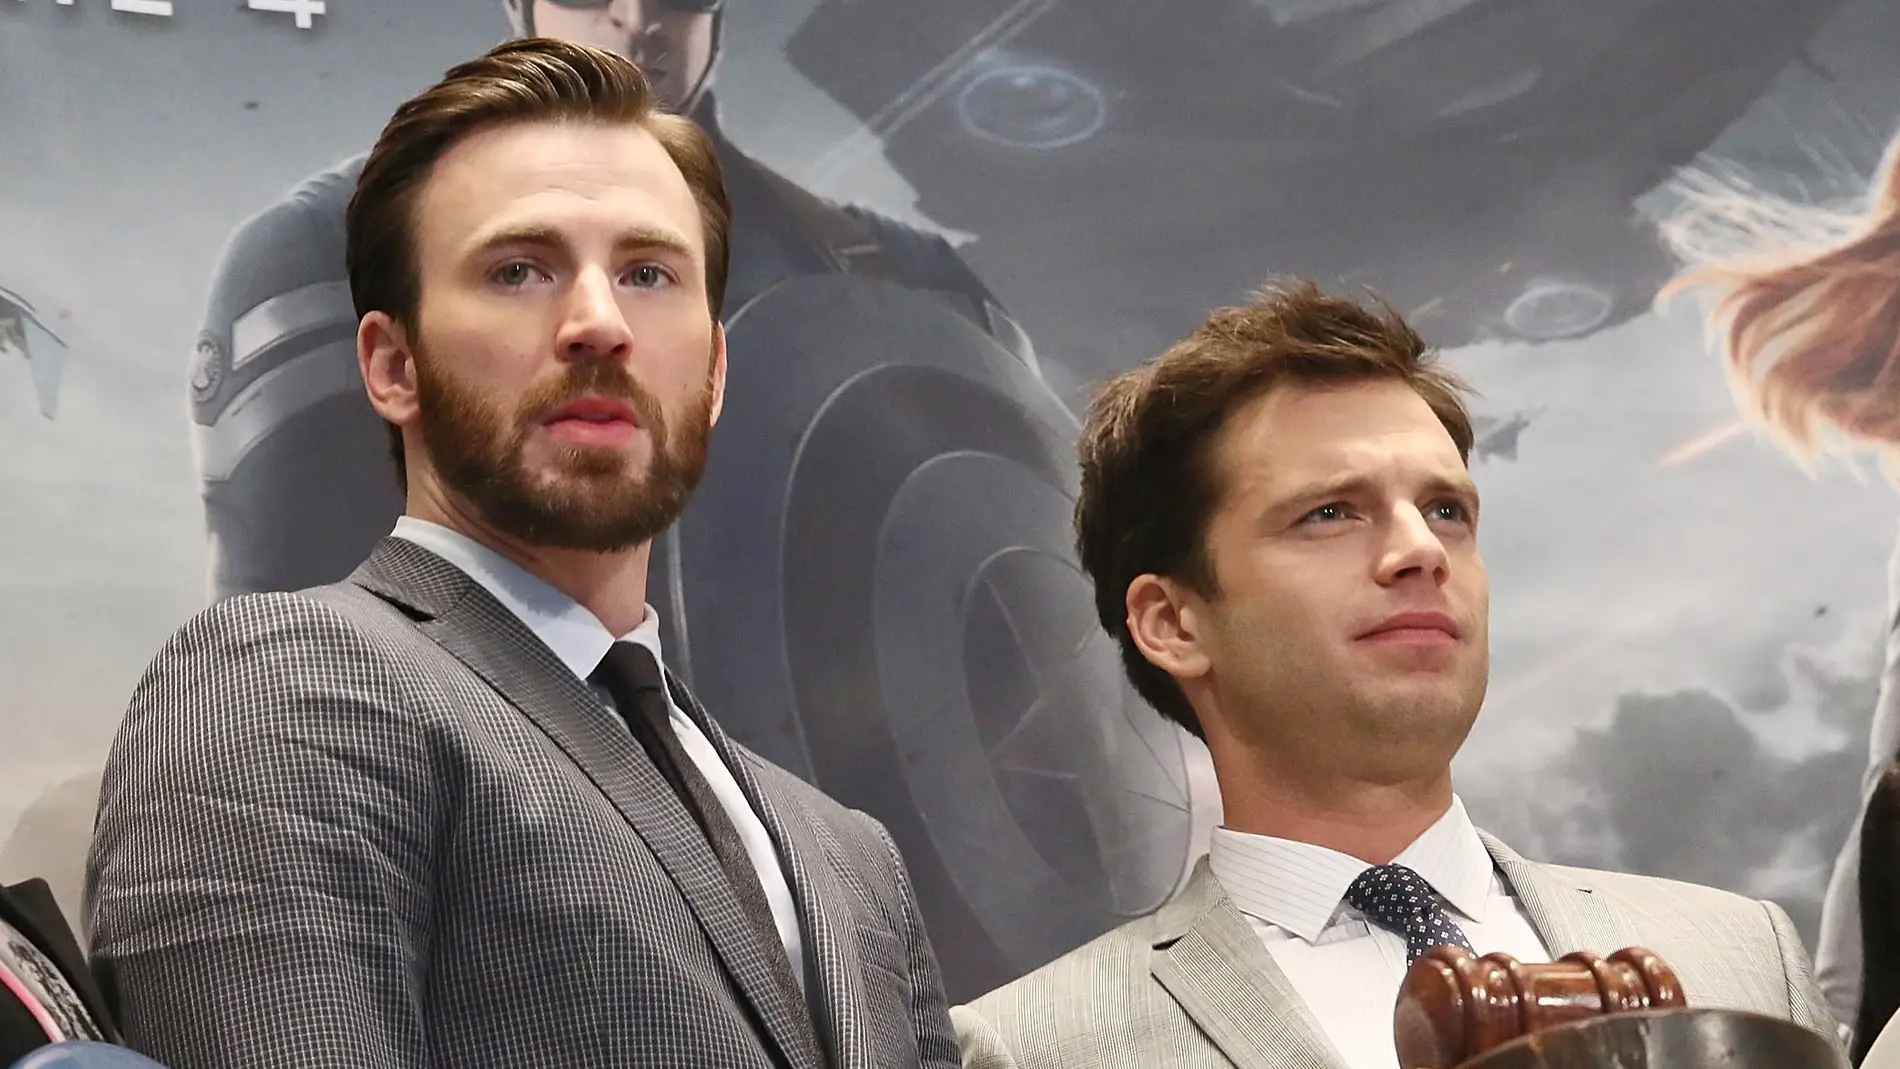 Chris Evans (Capitán América) y Sebastian Stan (Soldado de invierno)